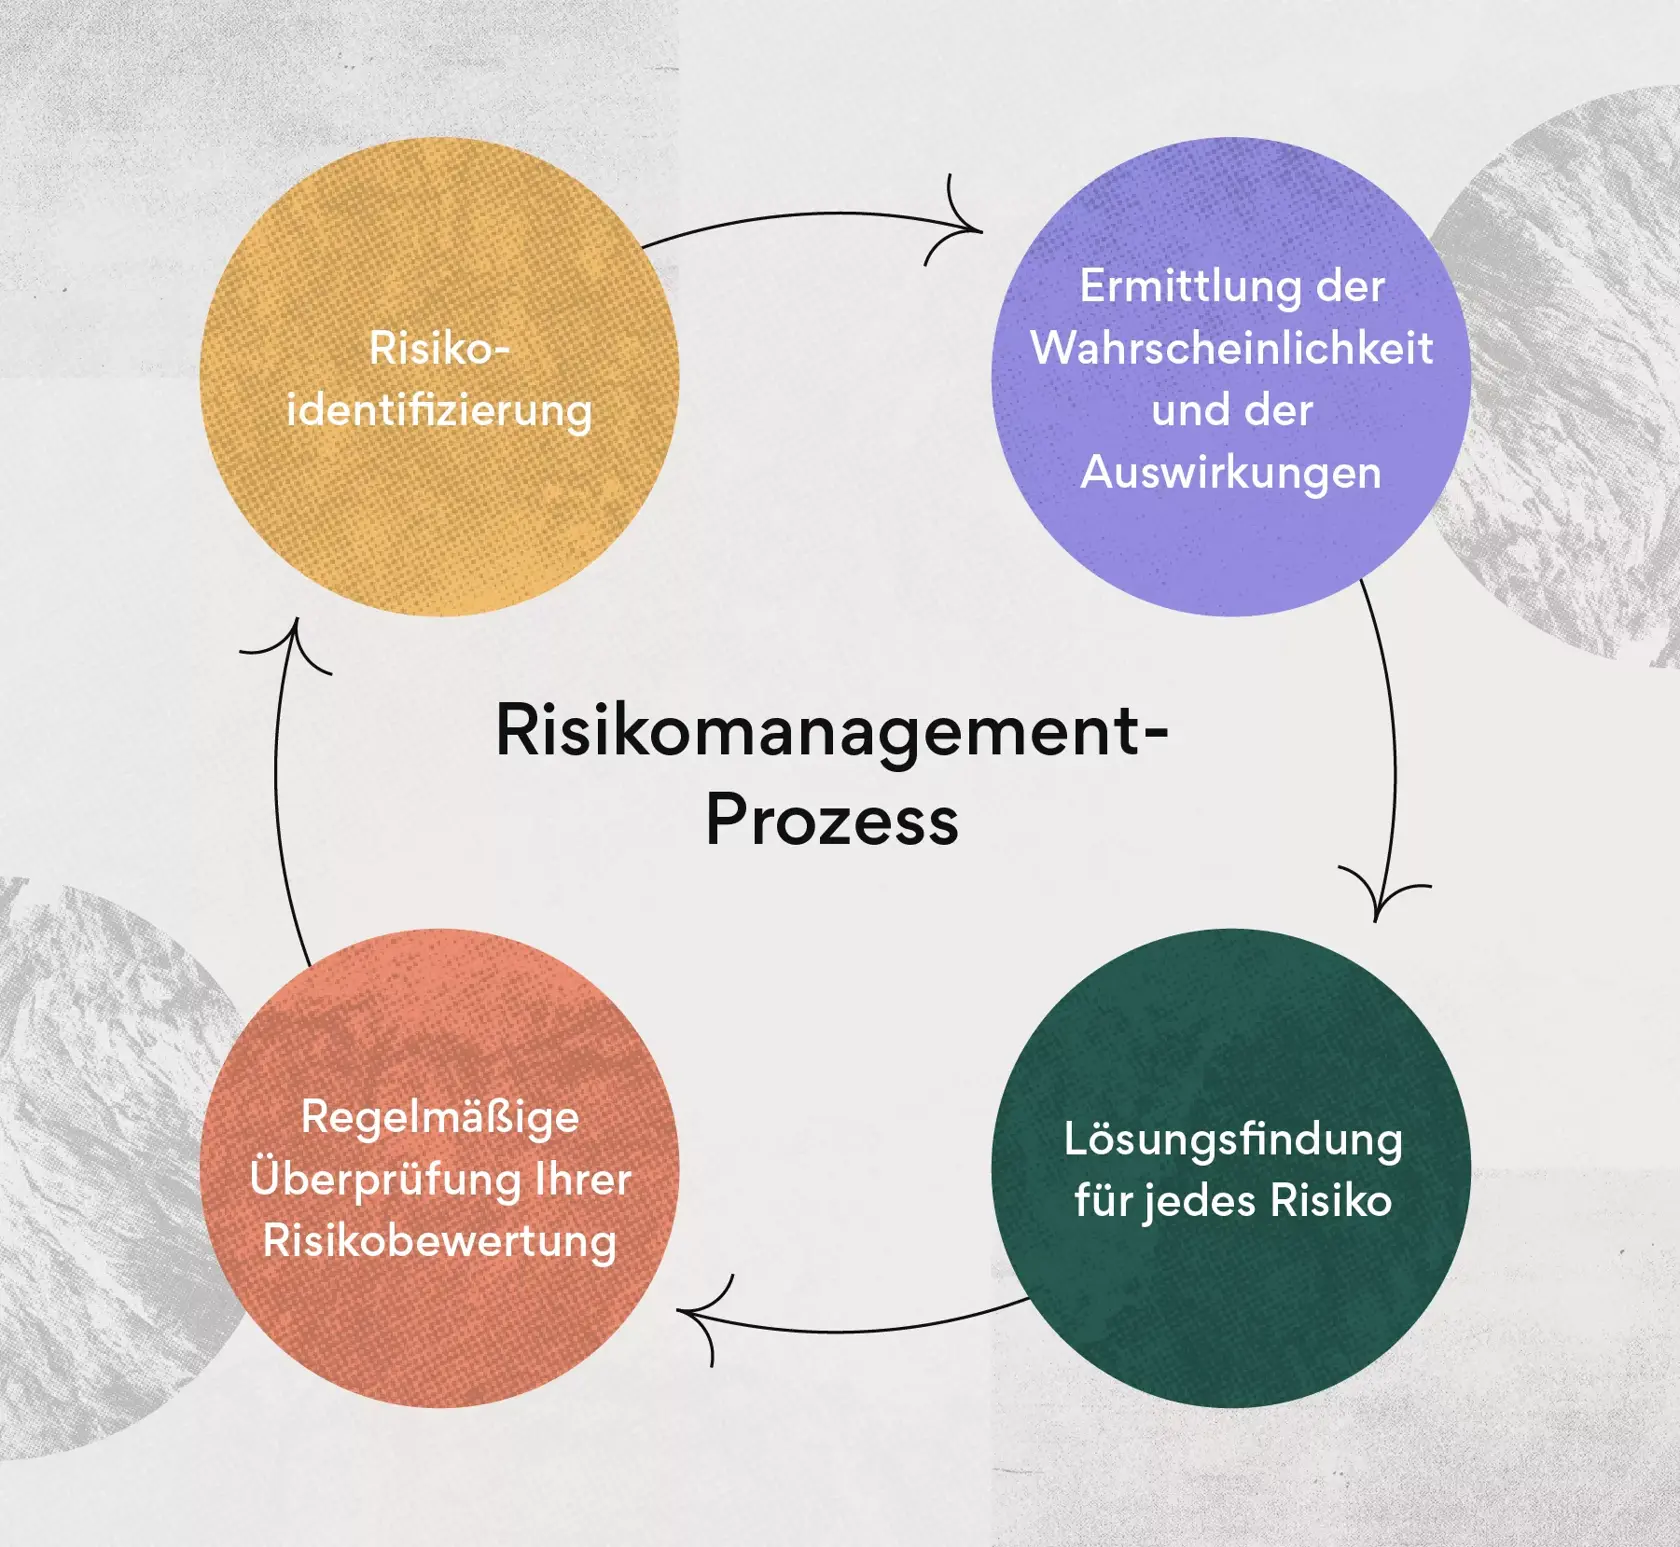 Wie Sie Ihr Team durch Risikomanagement vorbereiten können